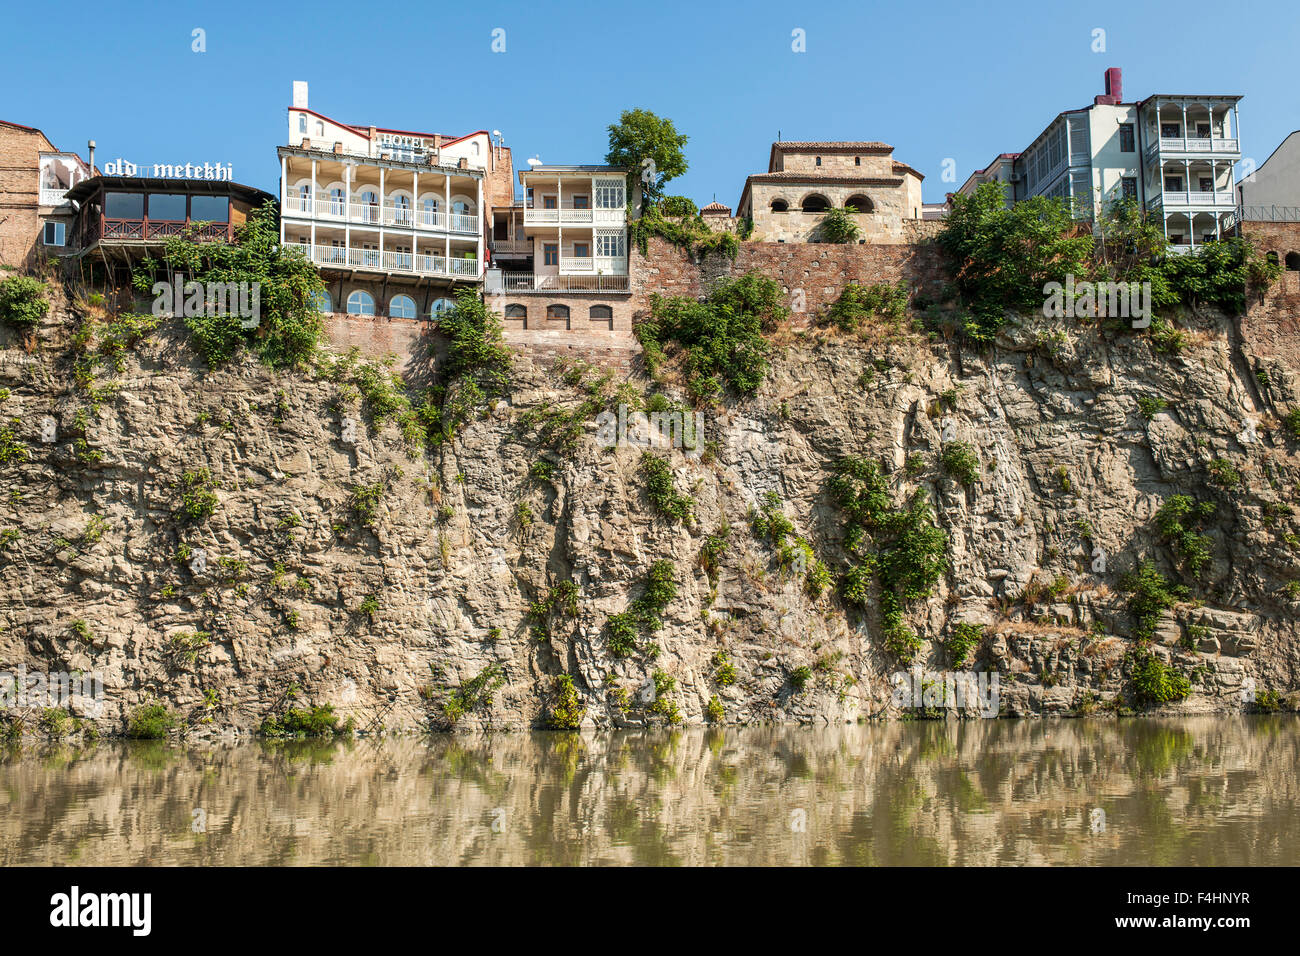 Bauten am Fluss Kura in Tiflis, der Hauptstadt Georgiens. Stockfoto